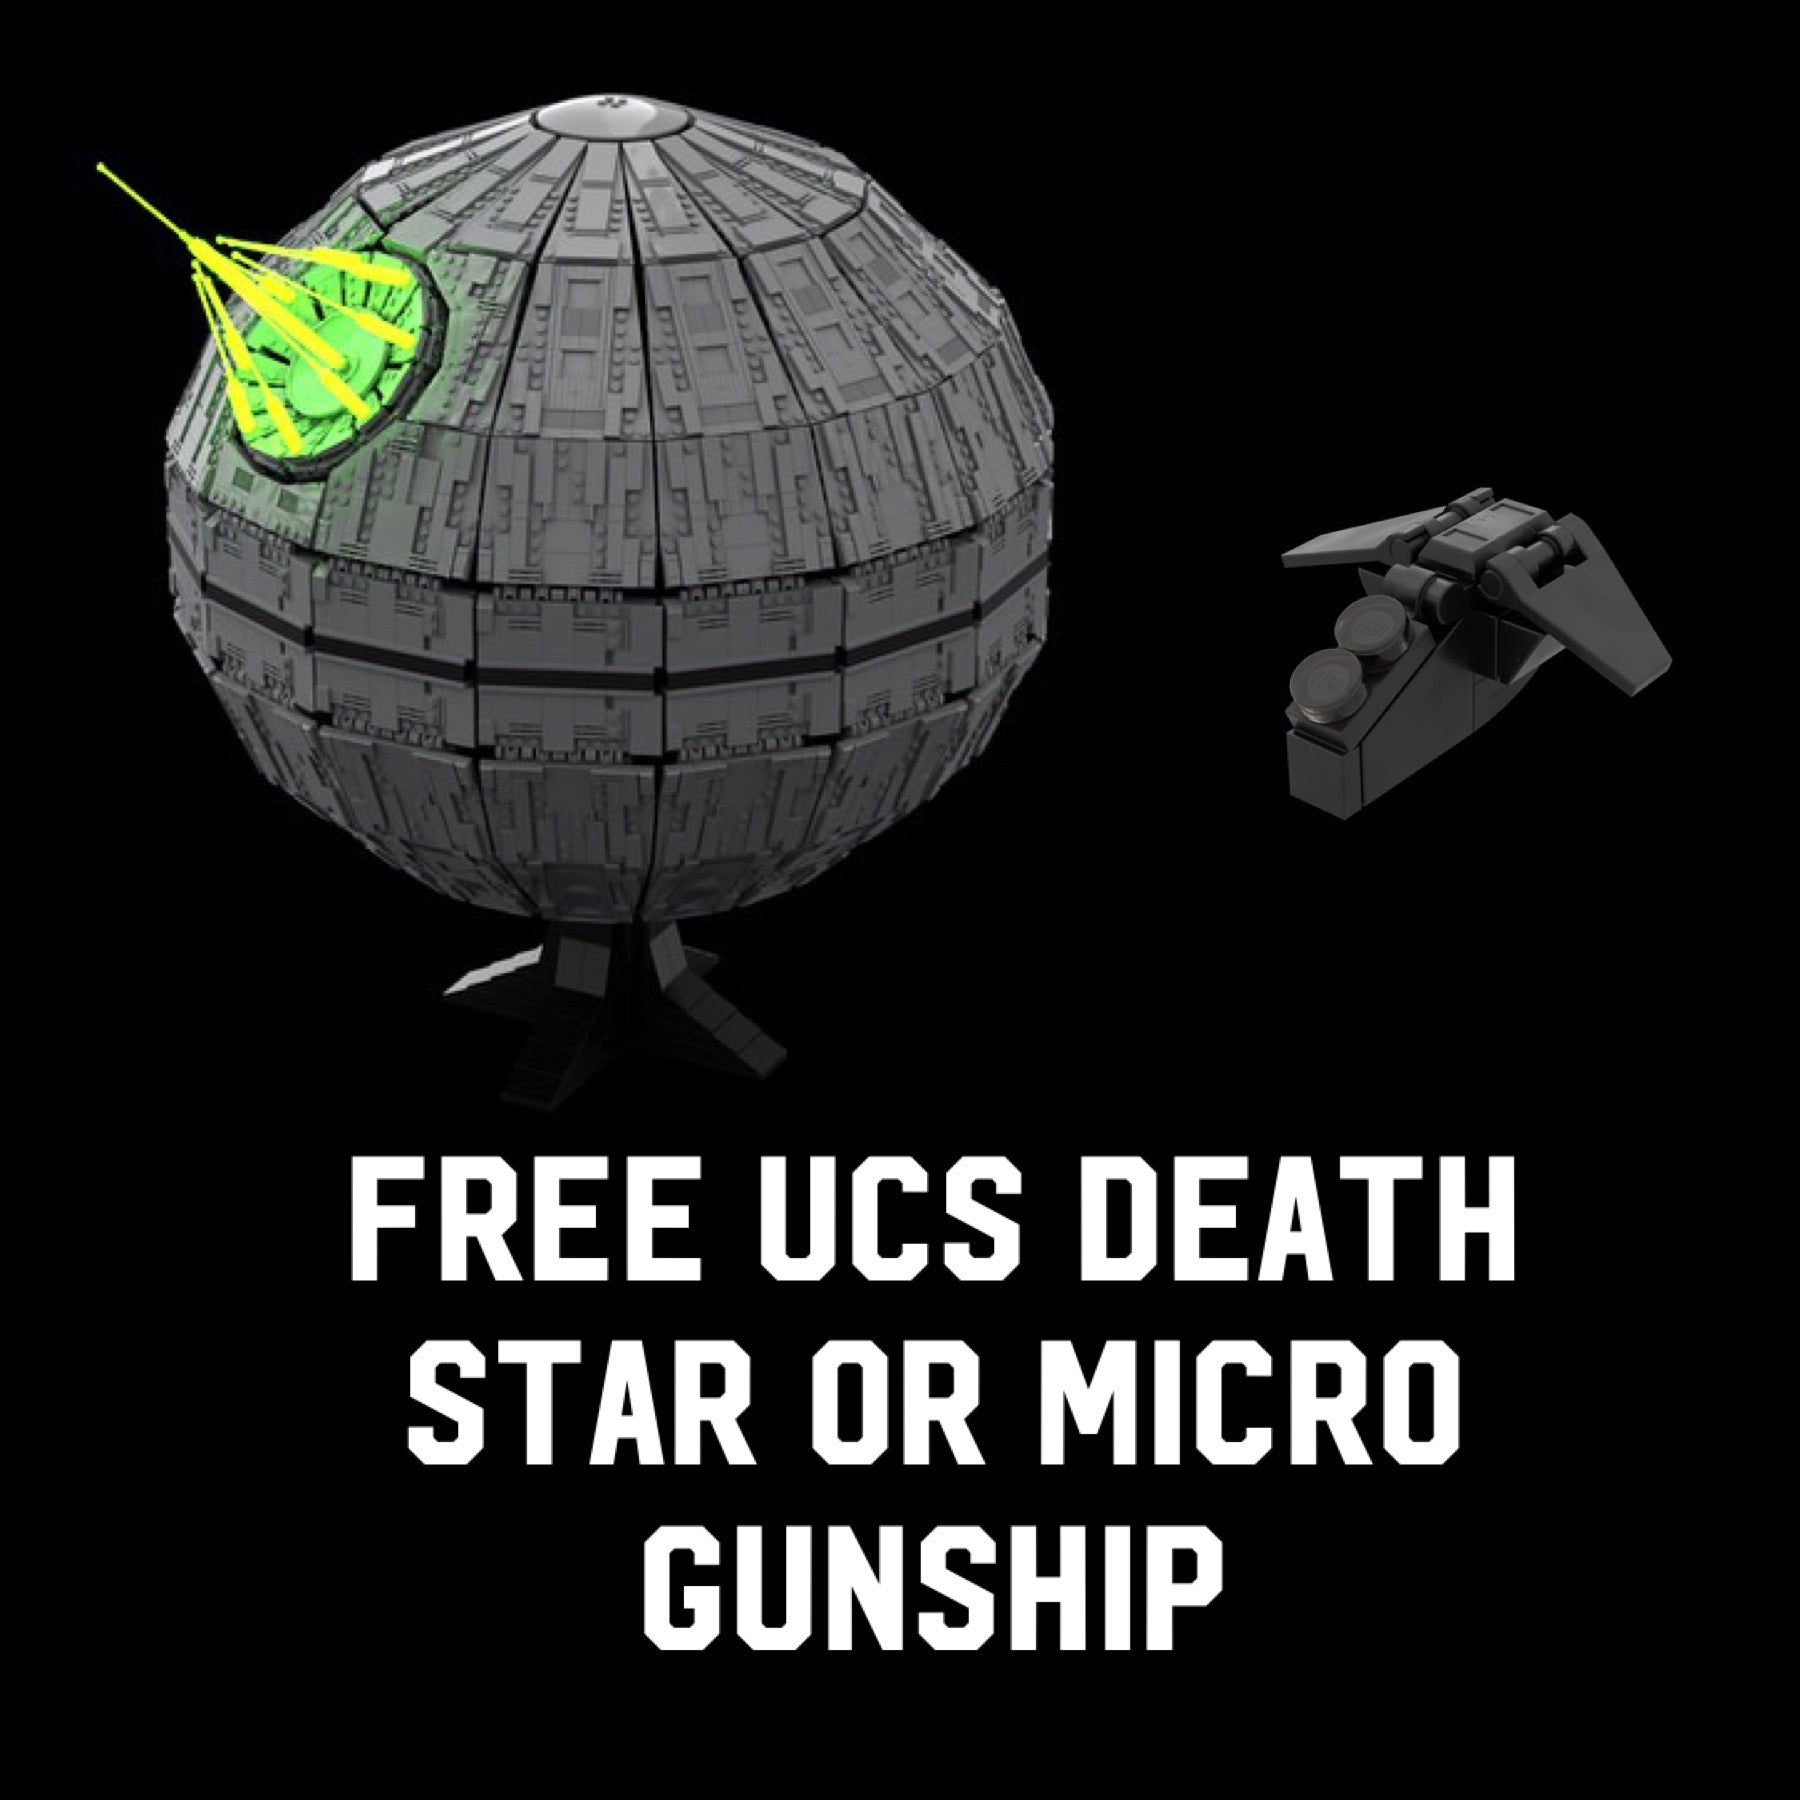 UCS DEATH STAR OR MICRO GUNSHIP